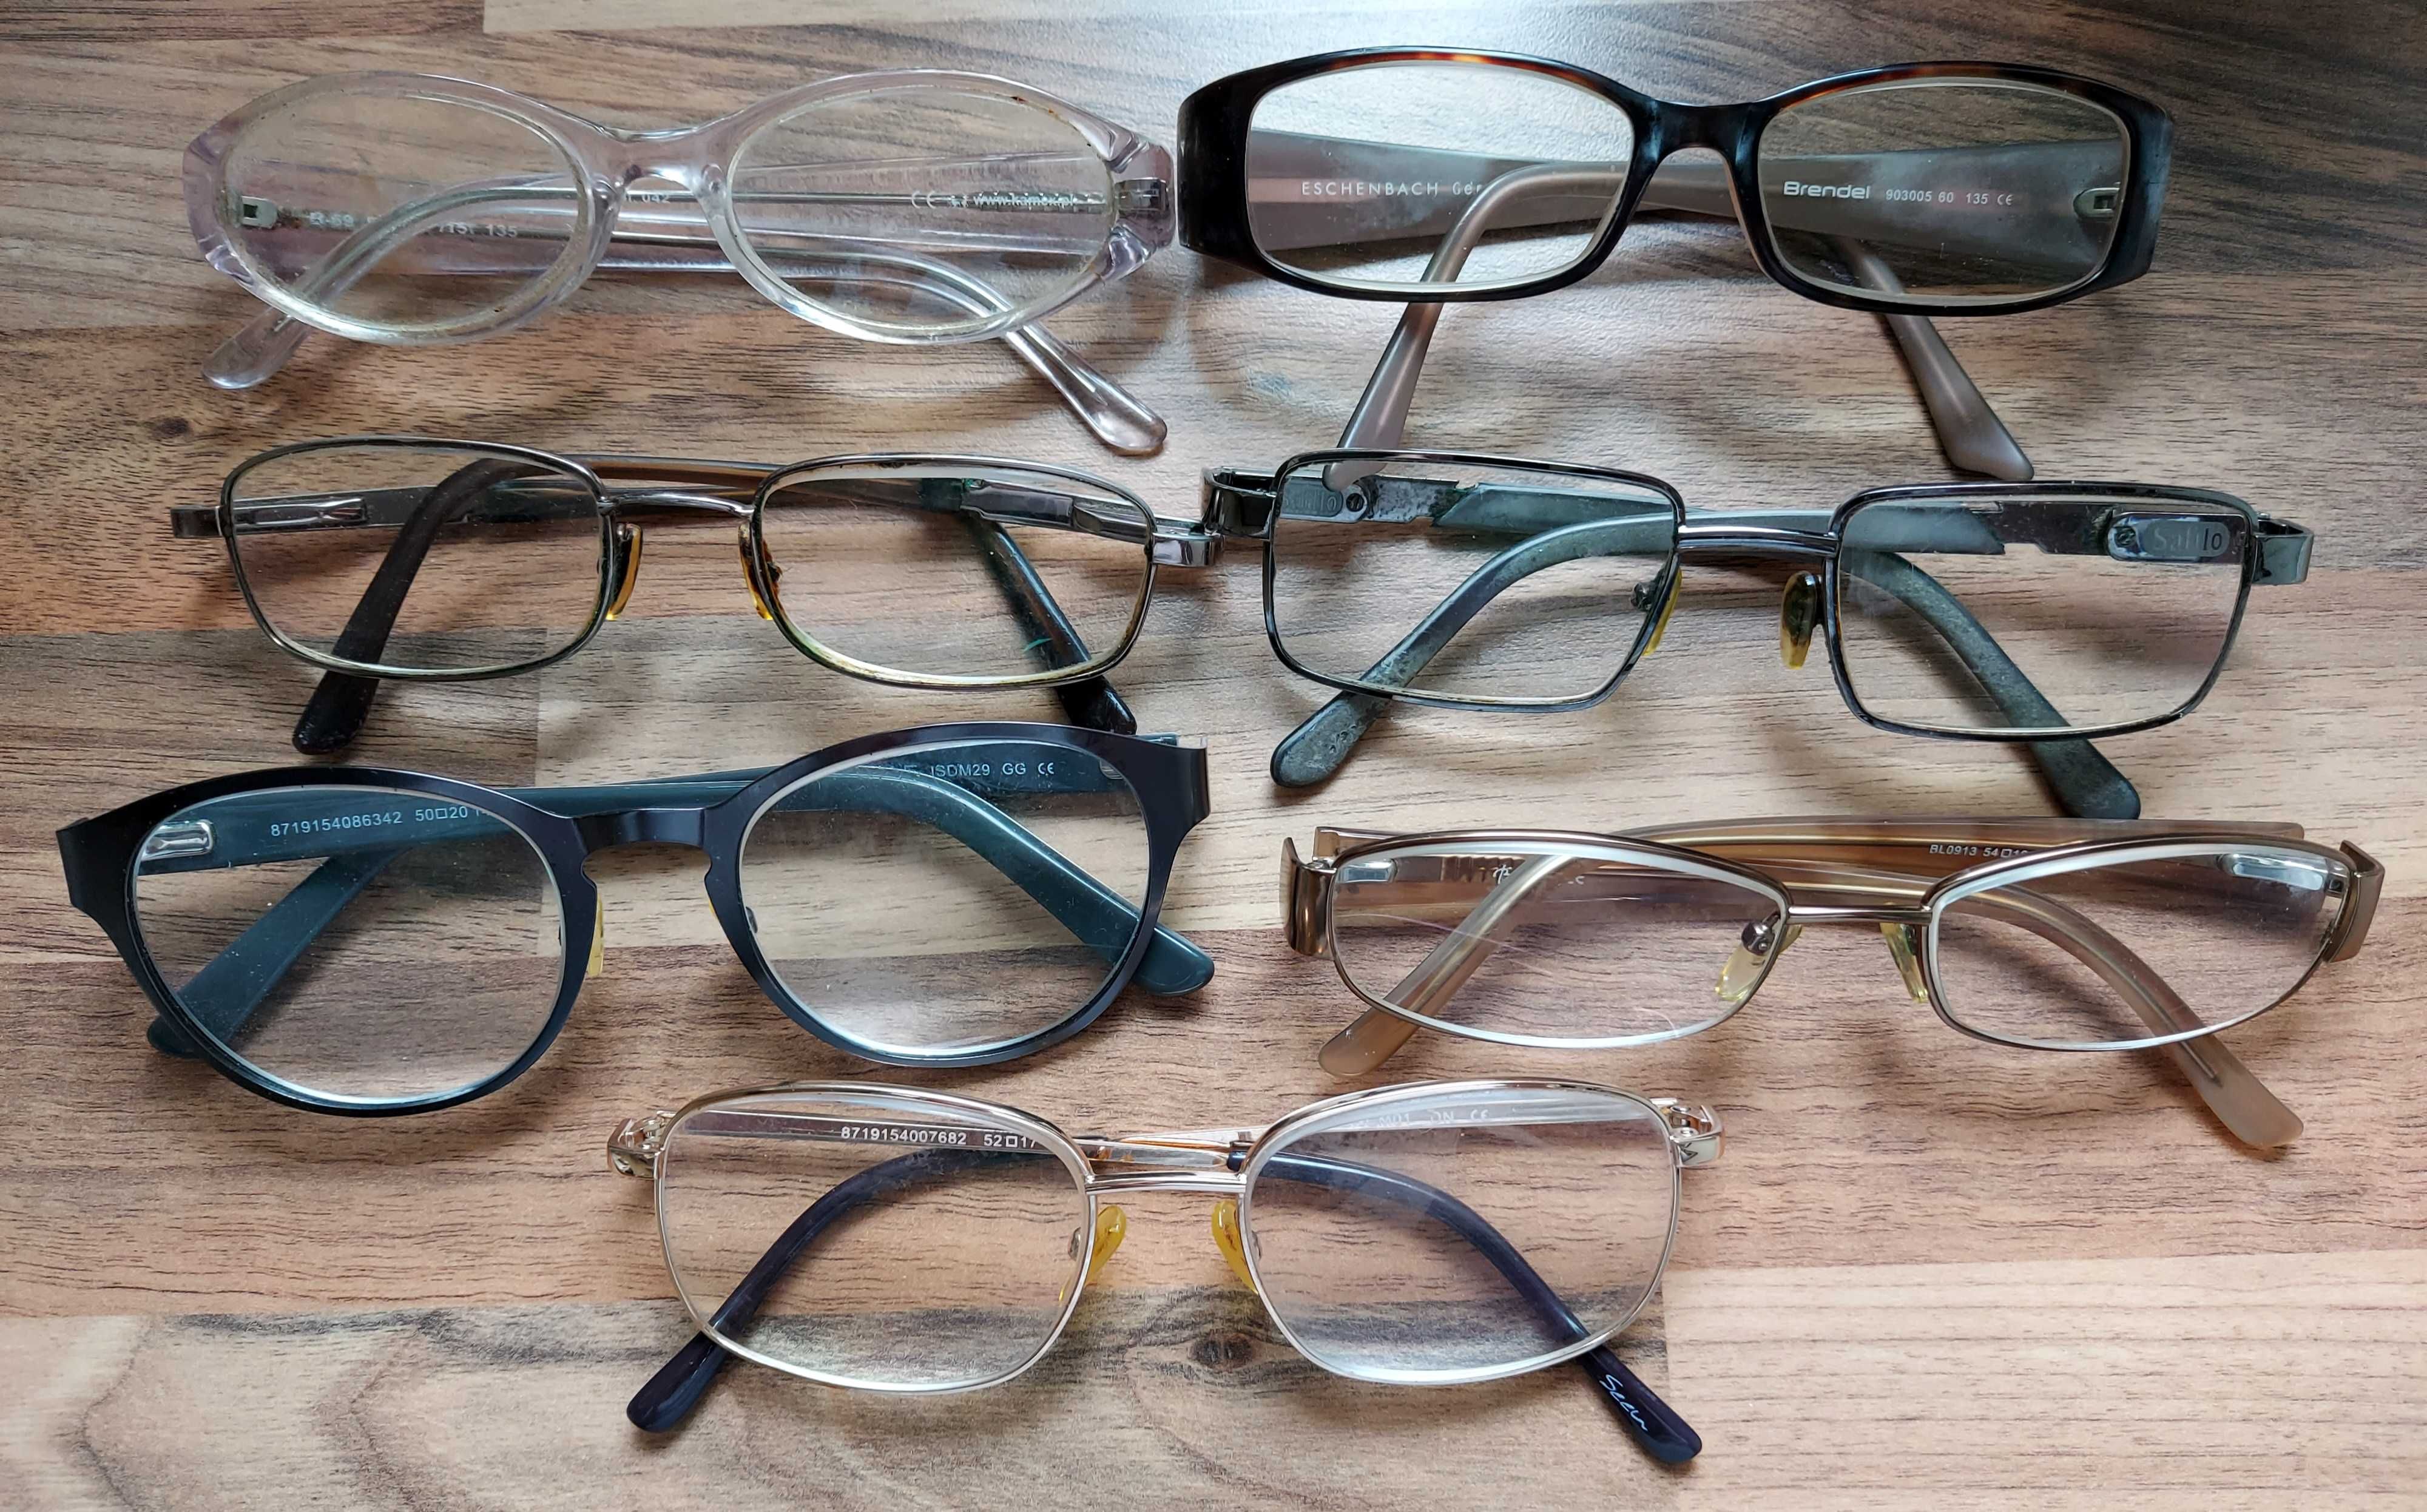 Okulary, oprawki do okularów, 7 sztuk, ze szkłami